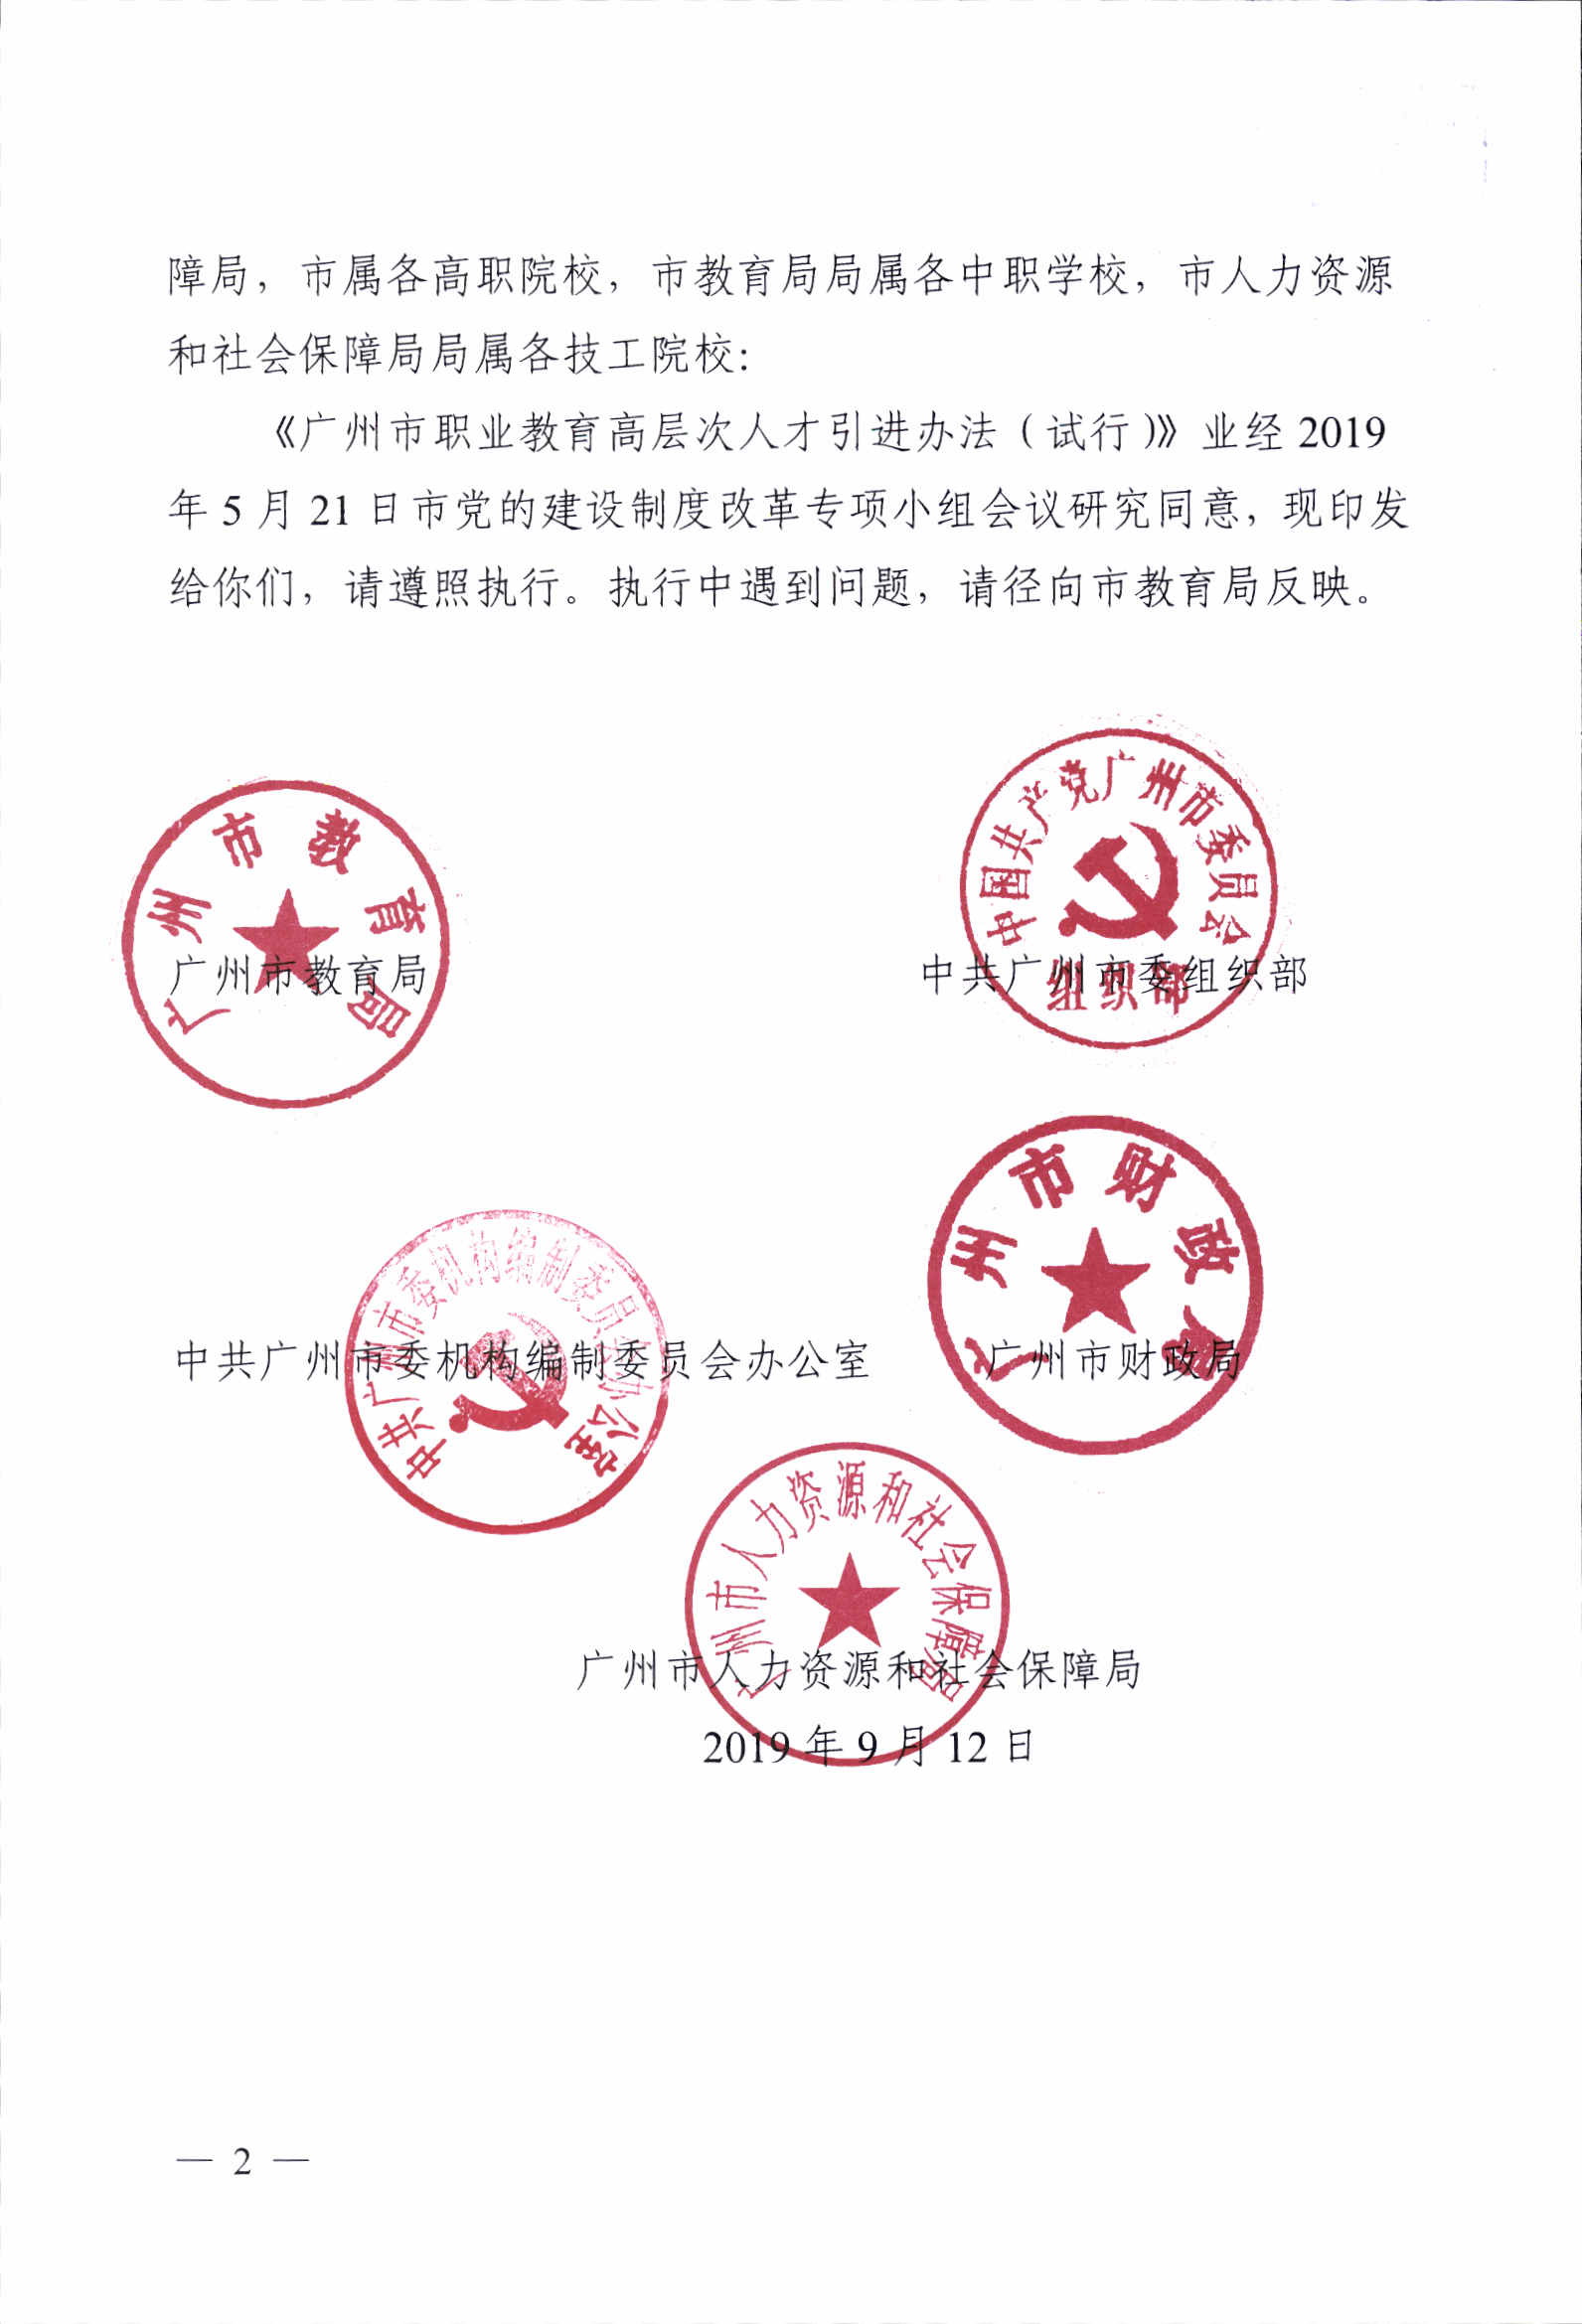 《广州市职业教育高层次人才引进办法（试行）》的通知1_p02.jpg